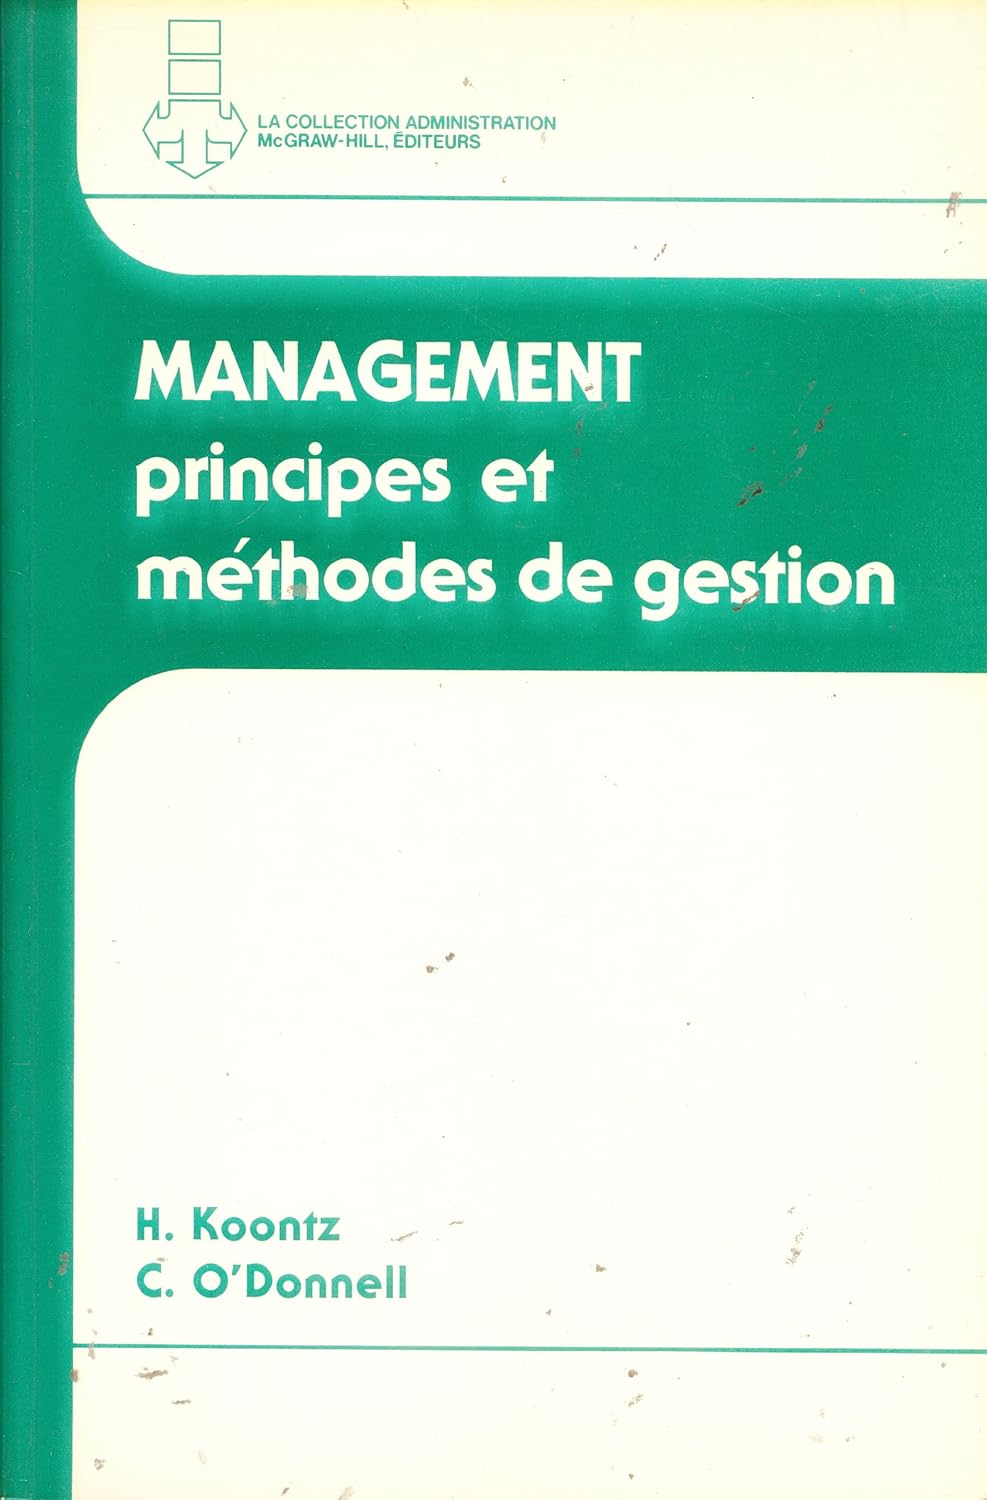 Management : Principes et méthodes de gestion - H. Koontz